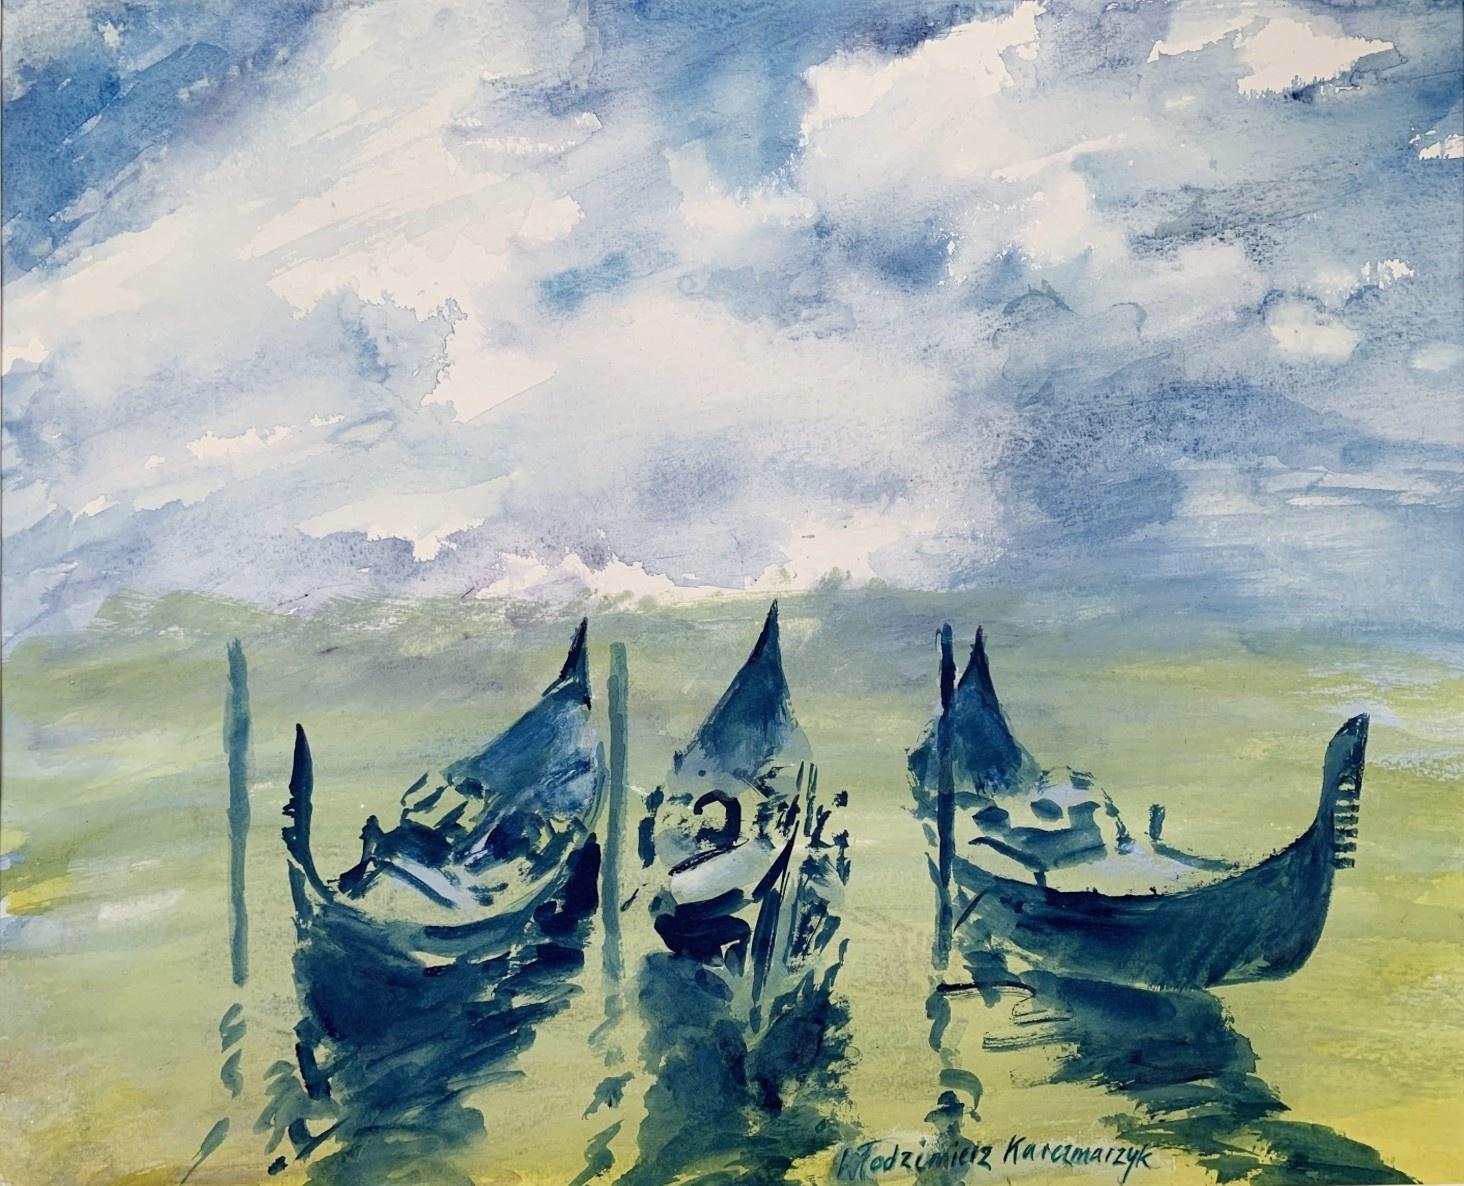 Włodzimierz Karczmarzyk Landscape Art - Venetian gondolas - Watercolor, Boats, Realistic, Classic, Polish artist